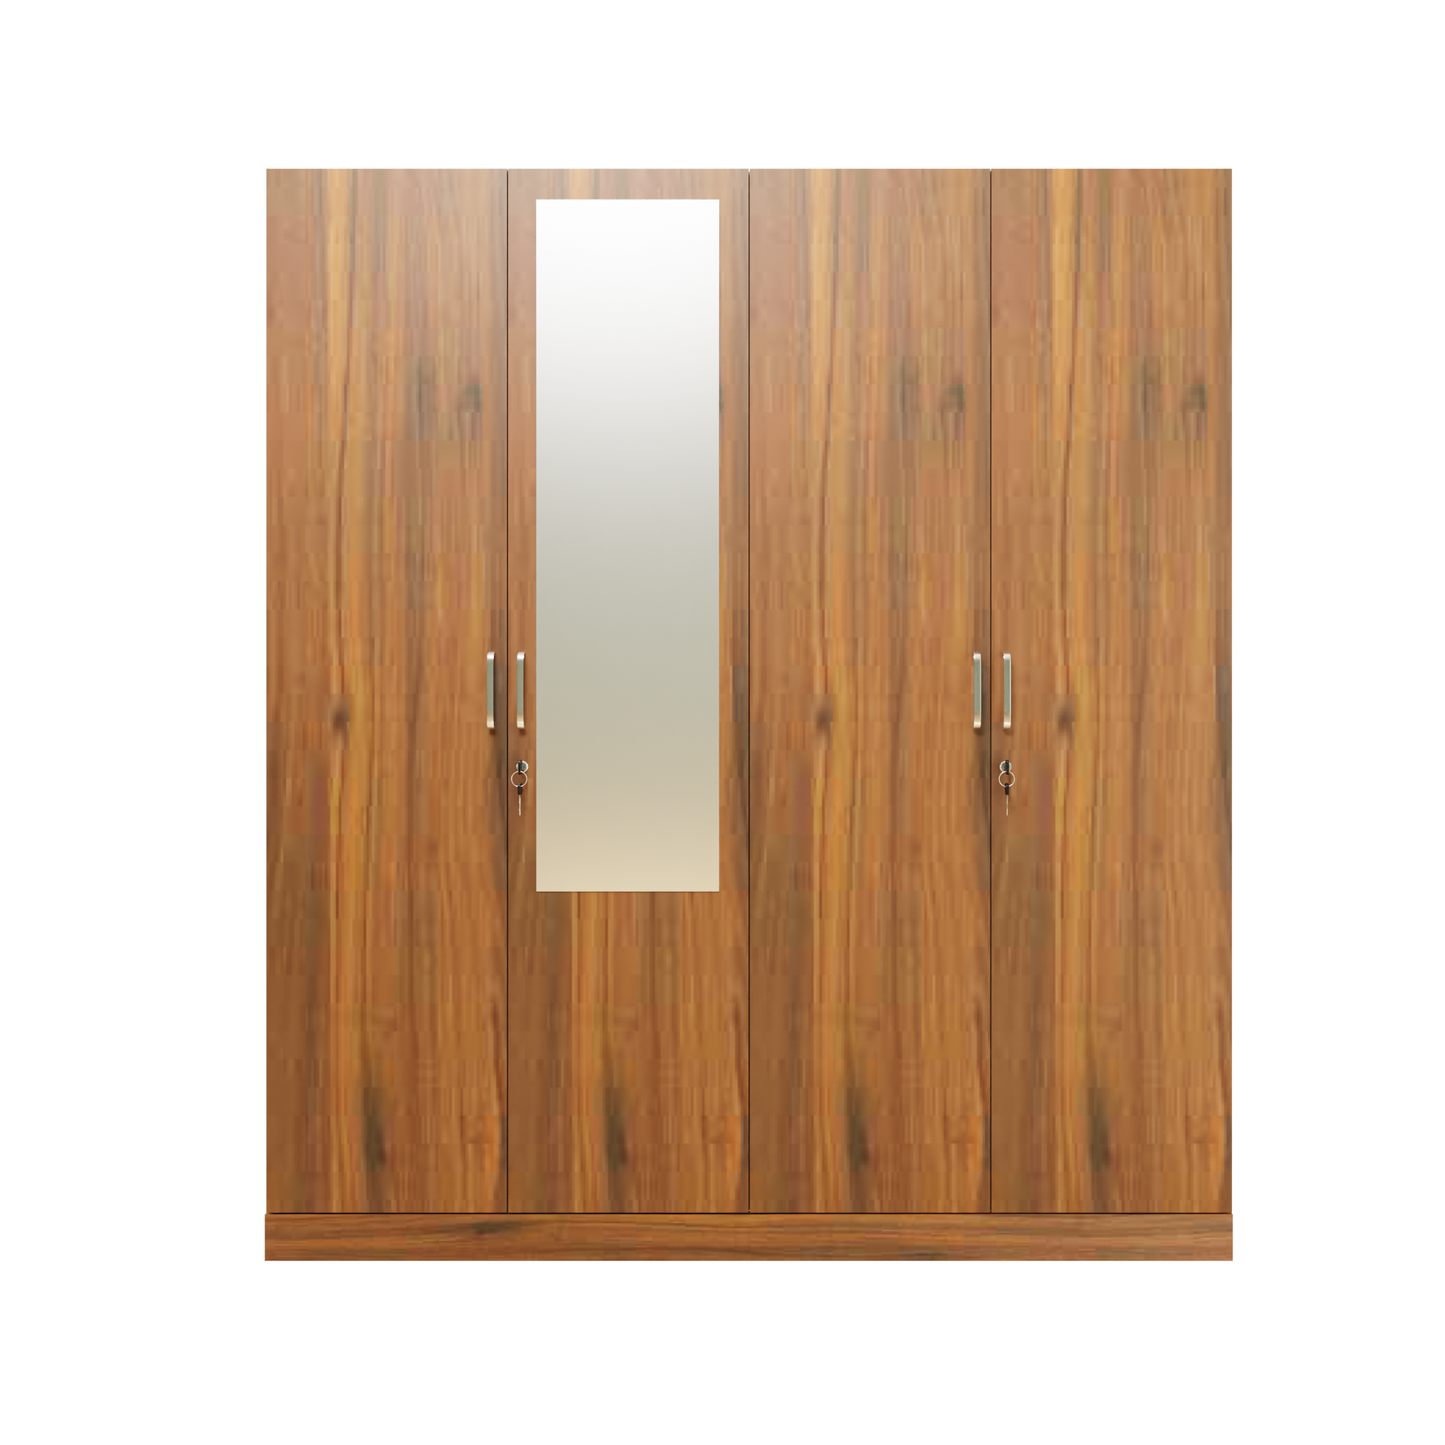 AVIRA |Wardrobe with Mirror, Hinged | 4 Door, 2 Inside Drawer Wardrobes VIKI FURNITURE   